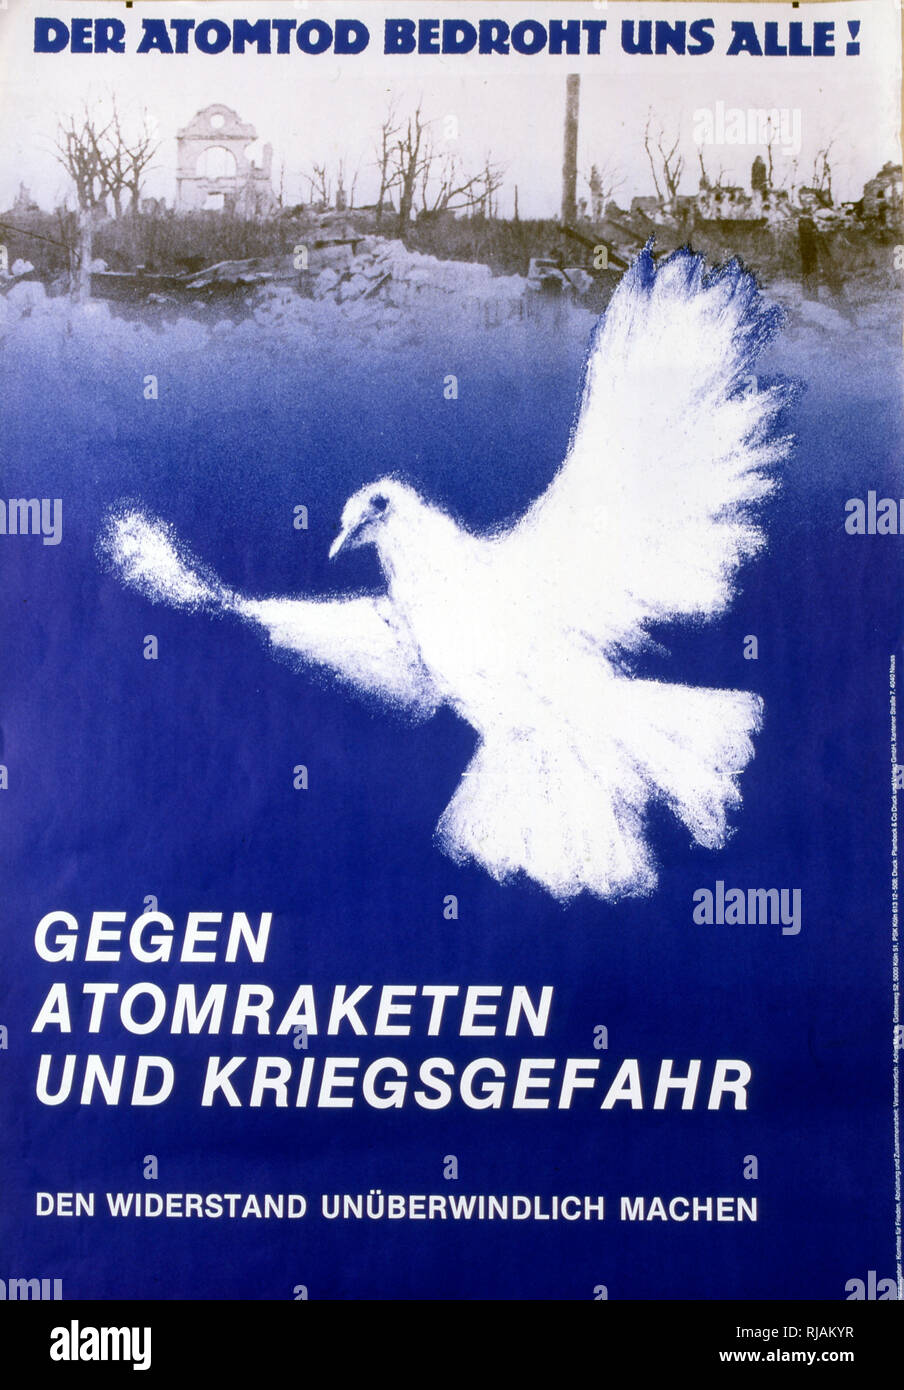 Der atomtod unse bedroht alle "atomare Tod droht alle' 1983, Anti-AKW-Krieg, Poster vom Deutschen Ausschuss für Freiheit veröffentlicht. Stockfoto